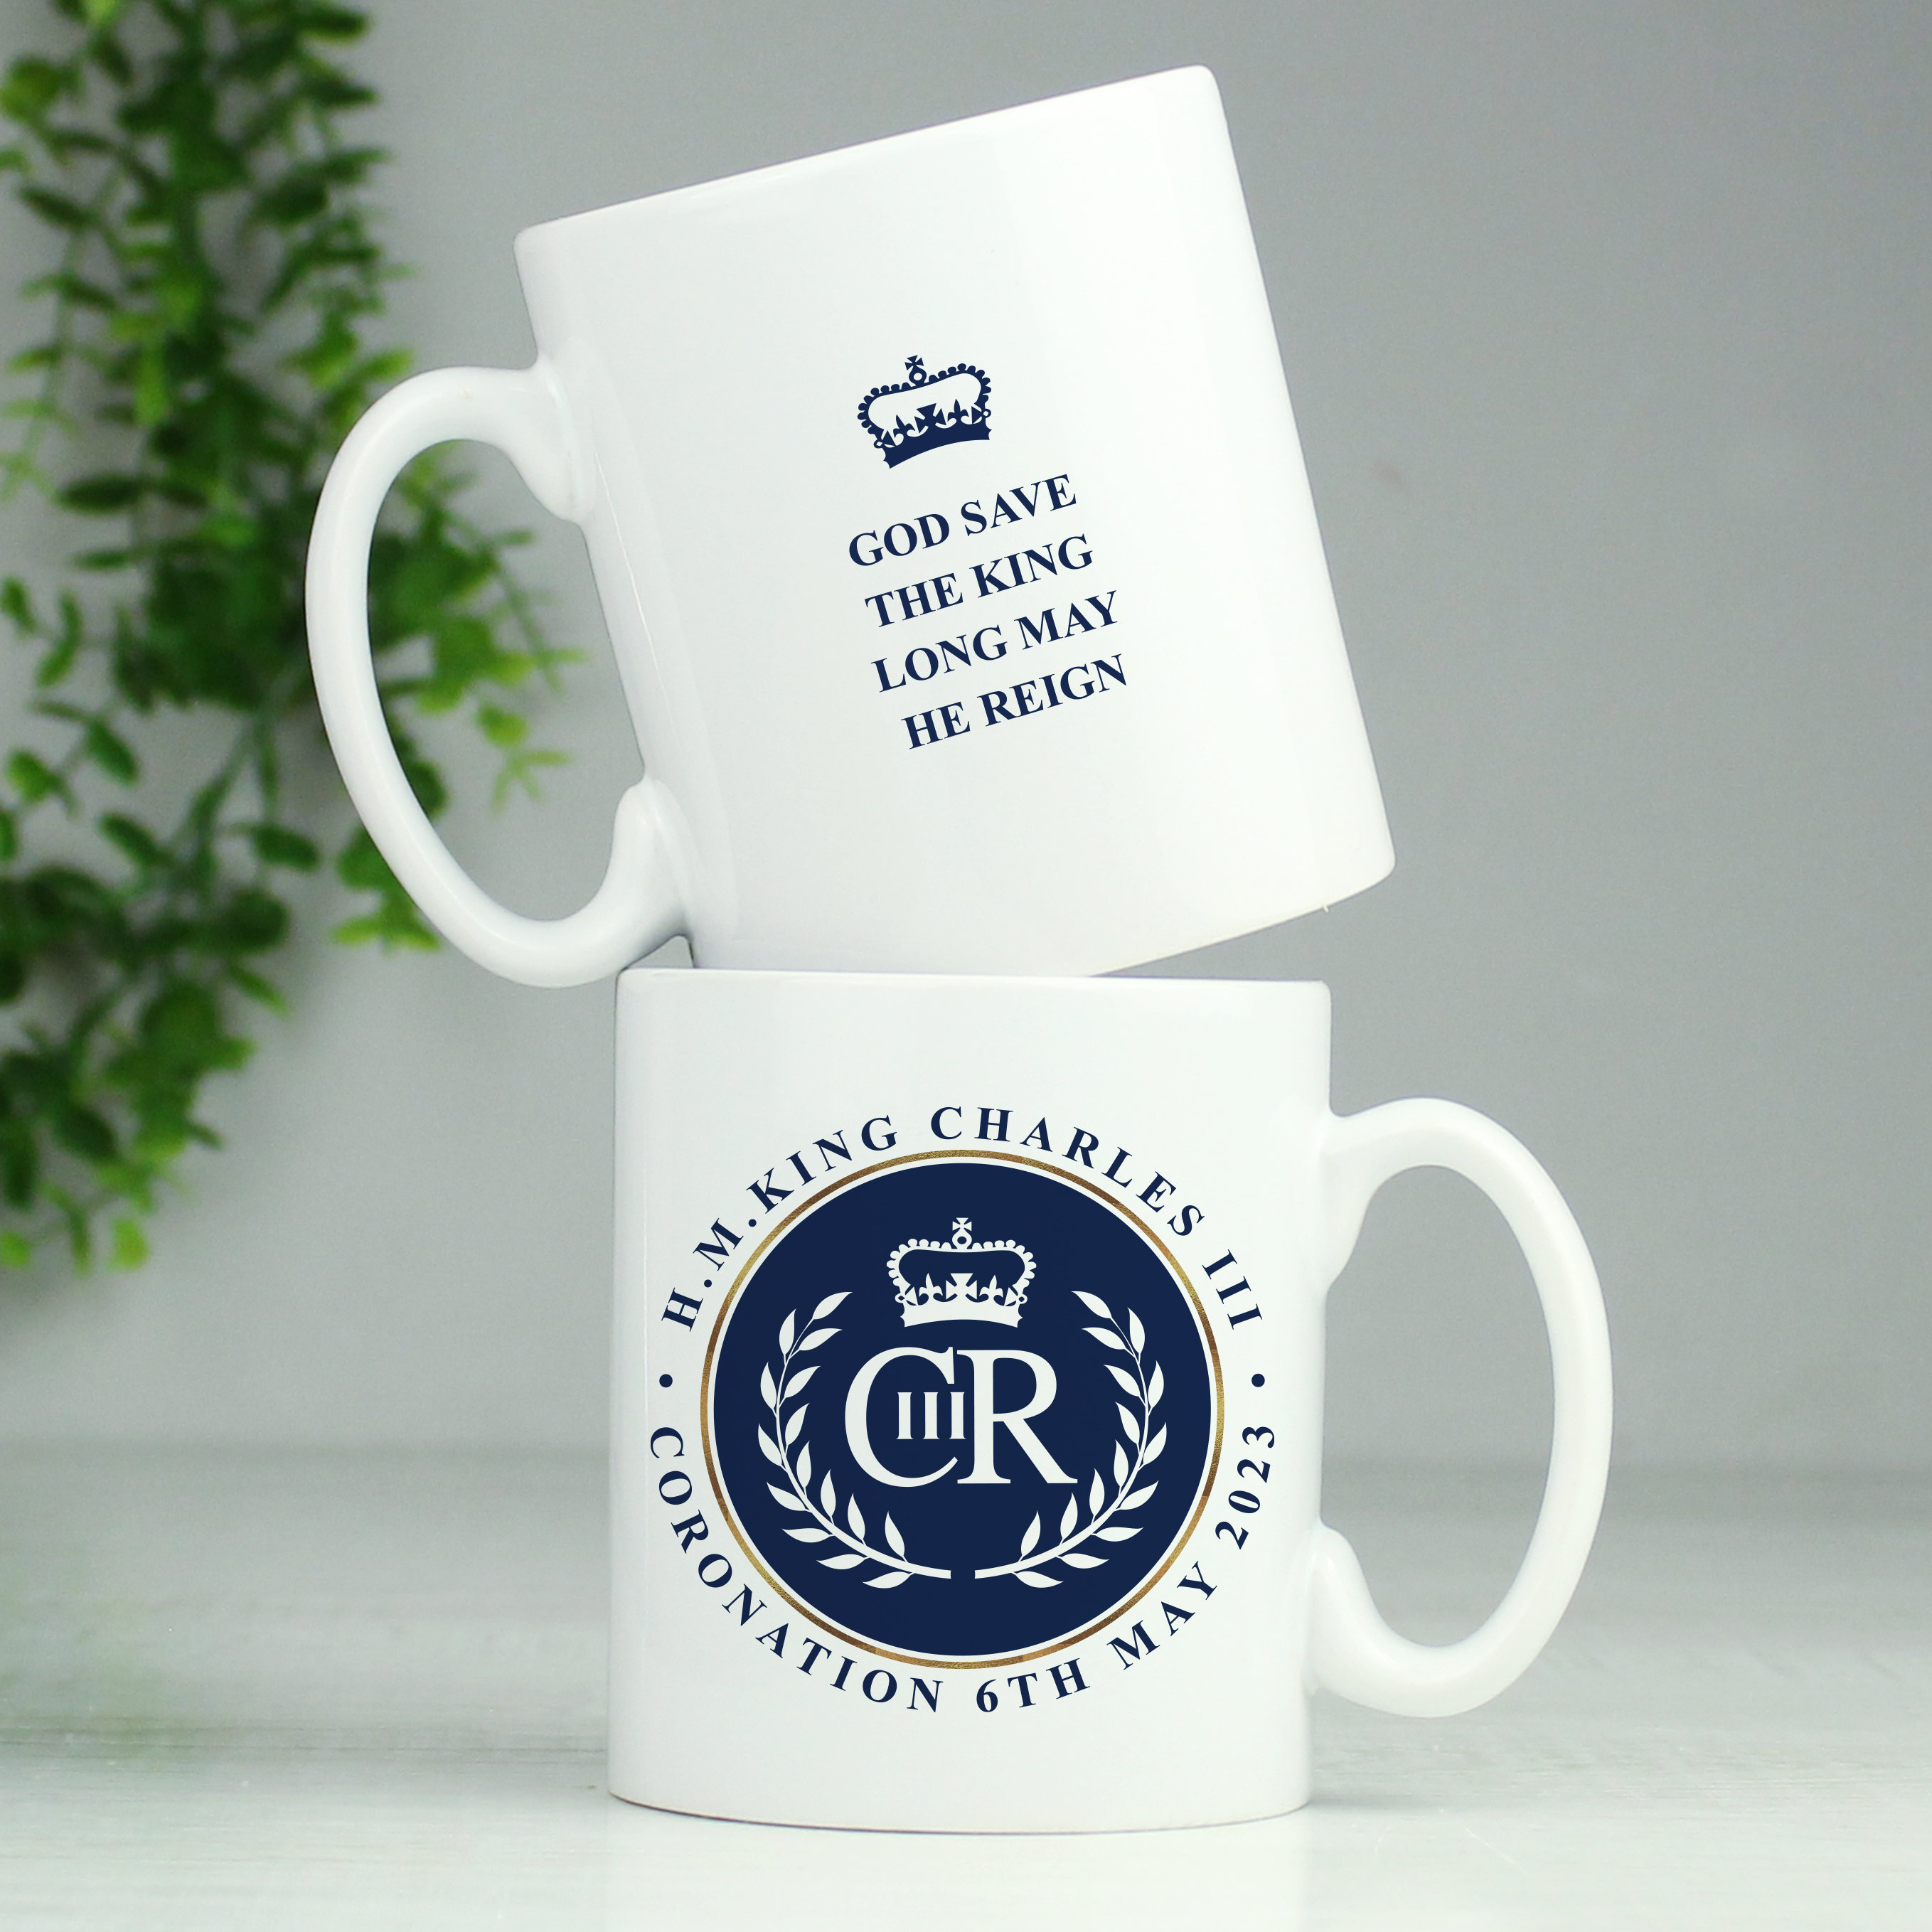 Personalised King's Coronation Blue Crest Mug